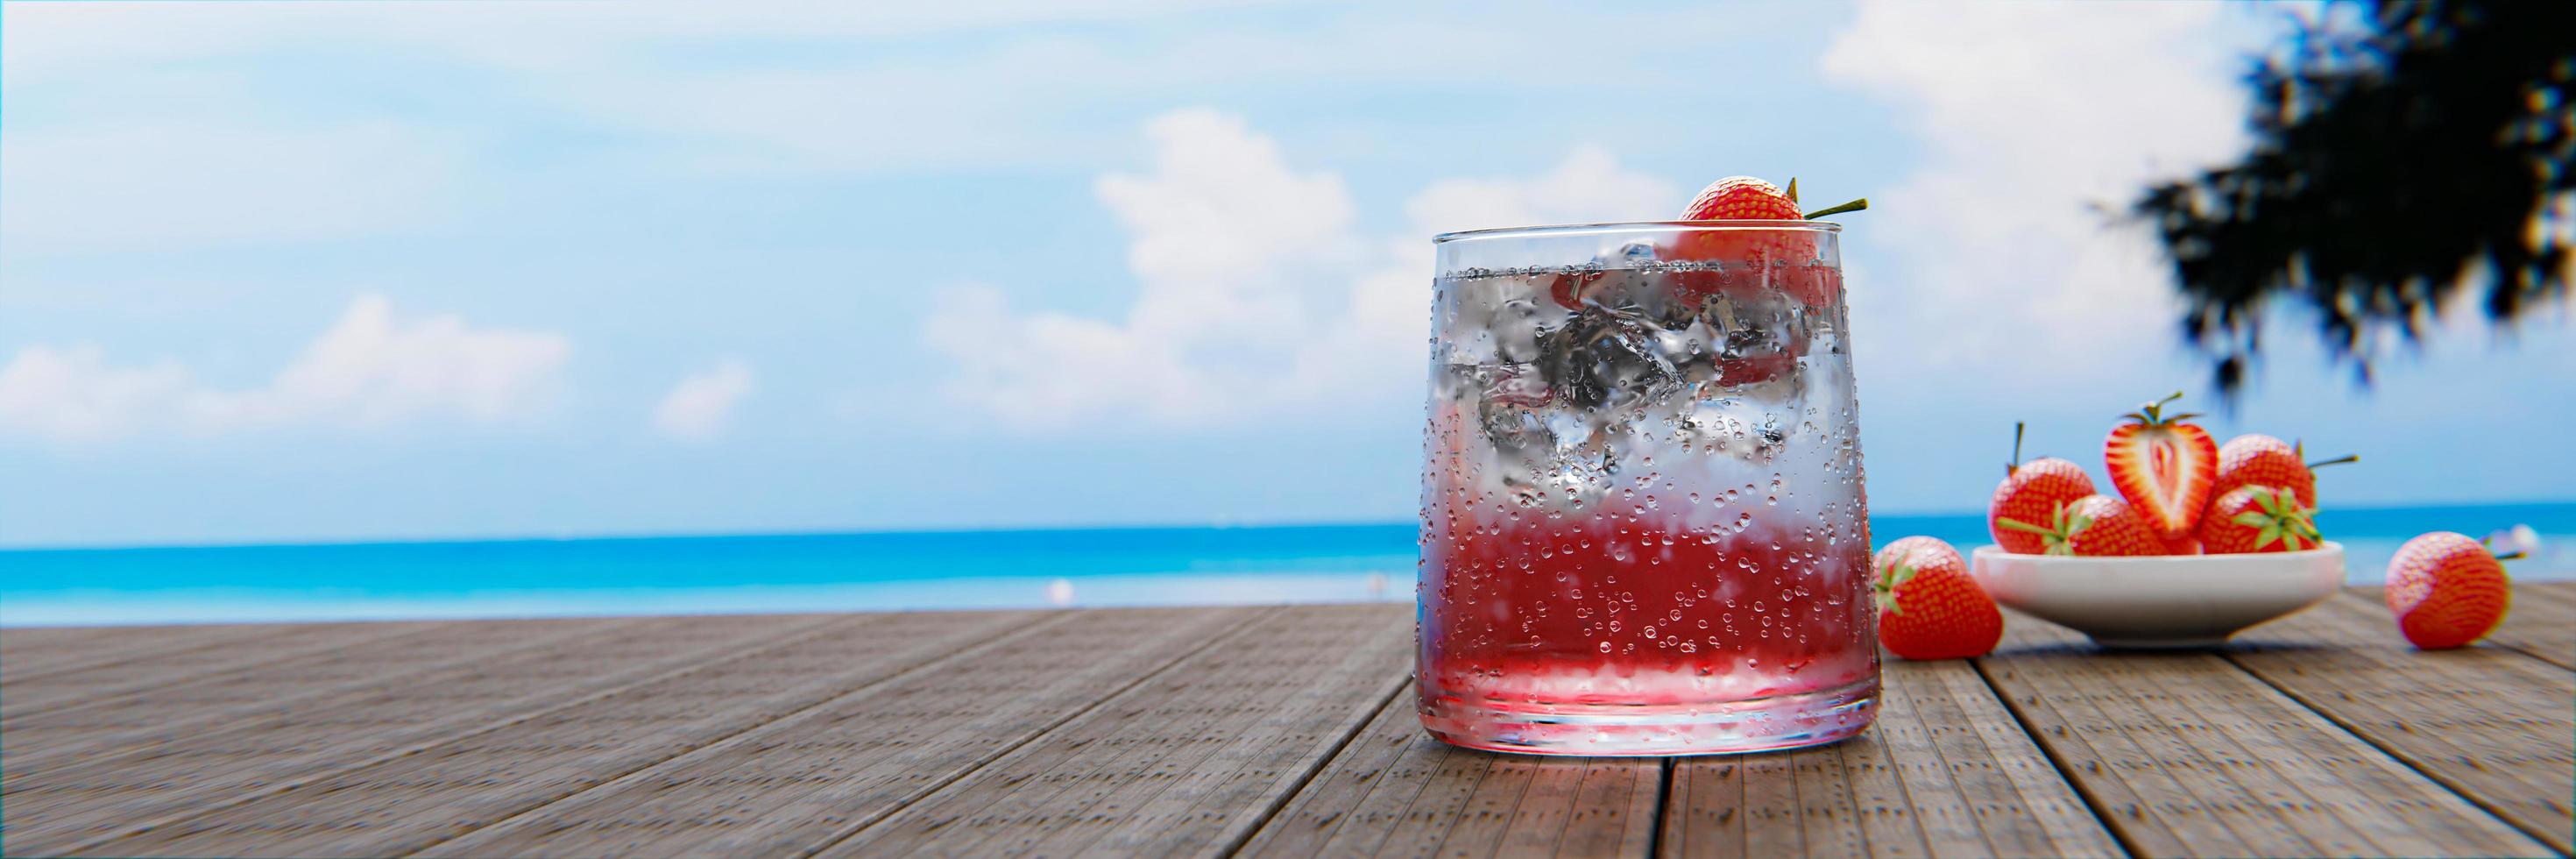 Mocktail Erdbeernektar mit Soda mischt keinen Alkohol. Frische Erdbeeren in einer Keramiktasse sind im Hintergrund unscharf auf einem Plankentisch platziert. das Restaurant am Strand und Meer. foto